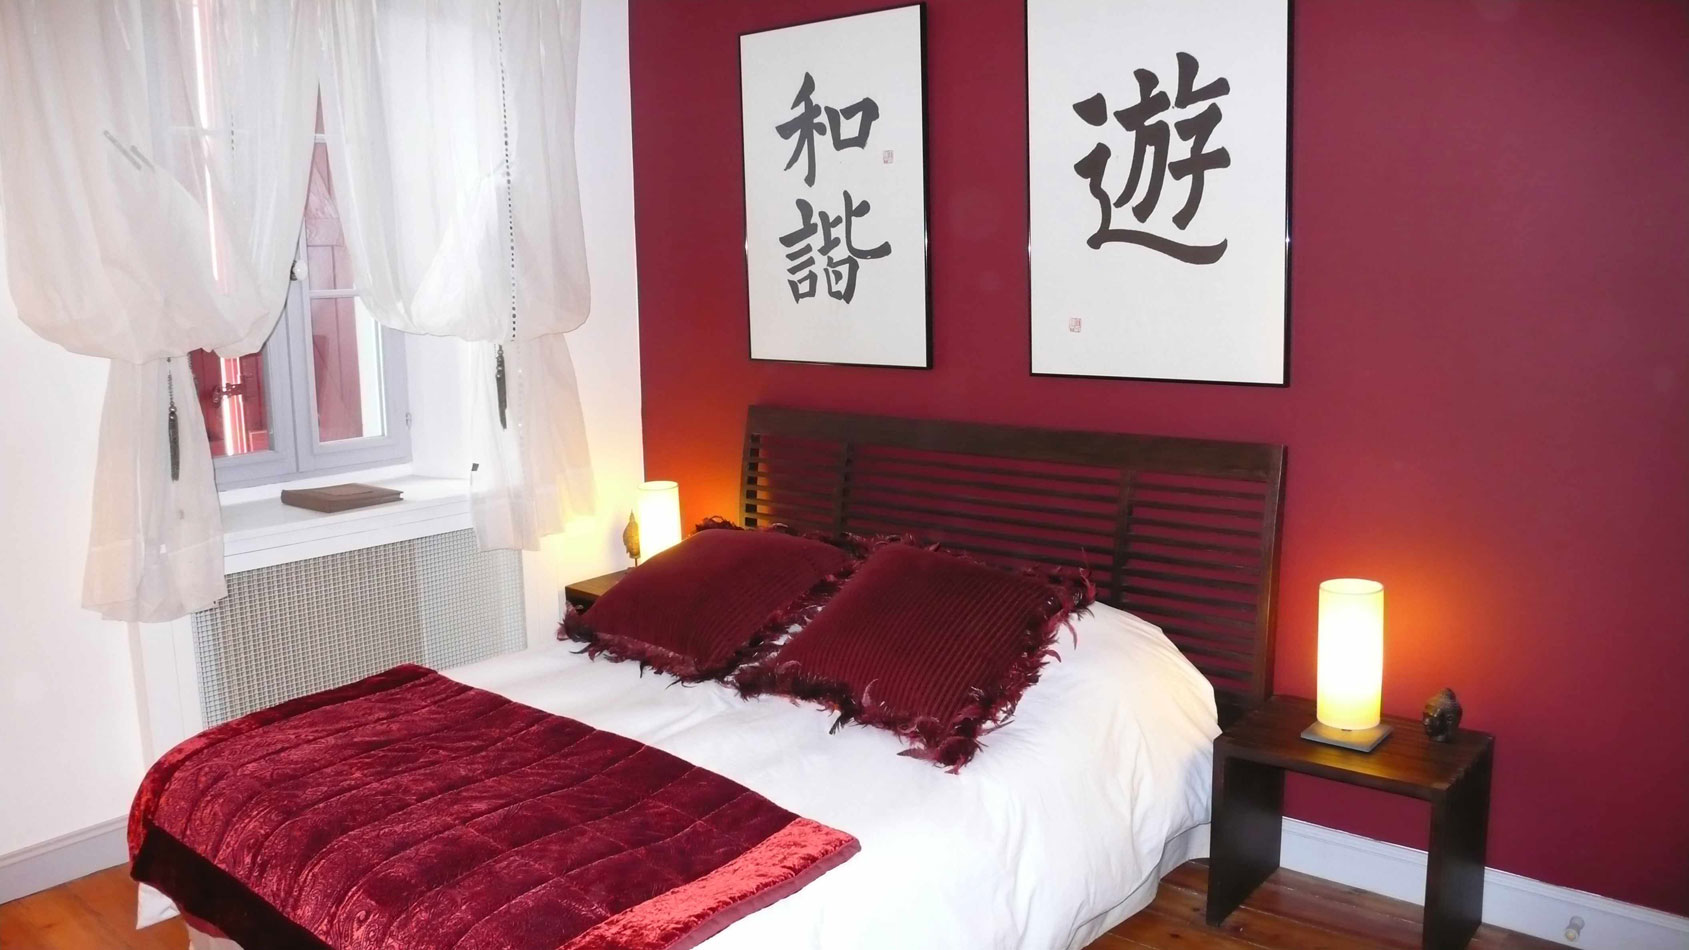 Красная стена, плед и подушки в интерьере